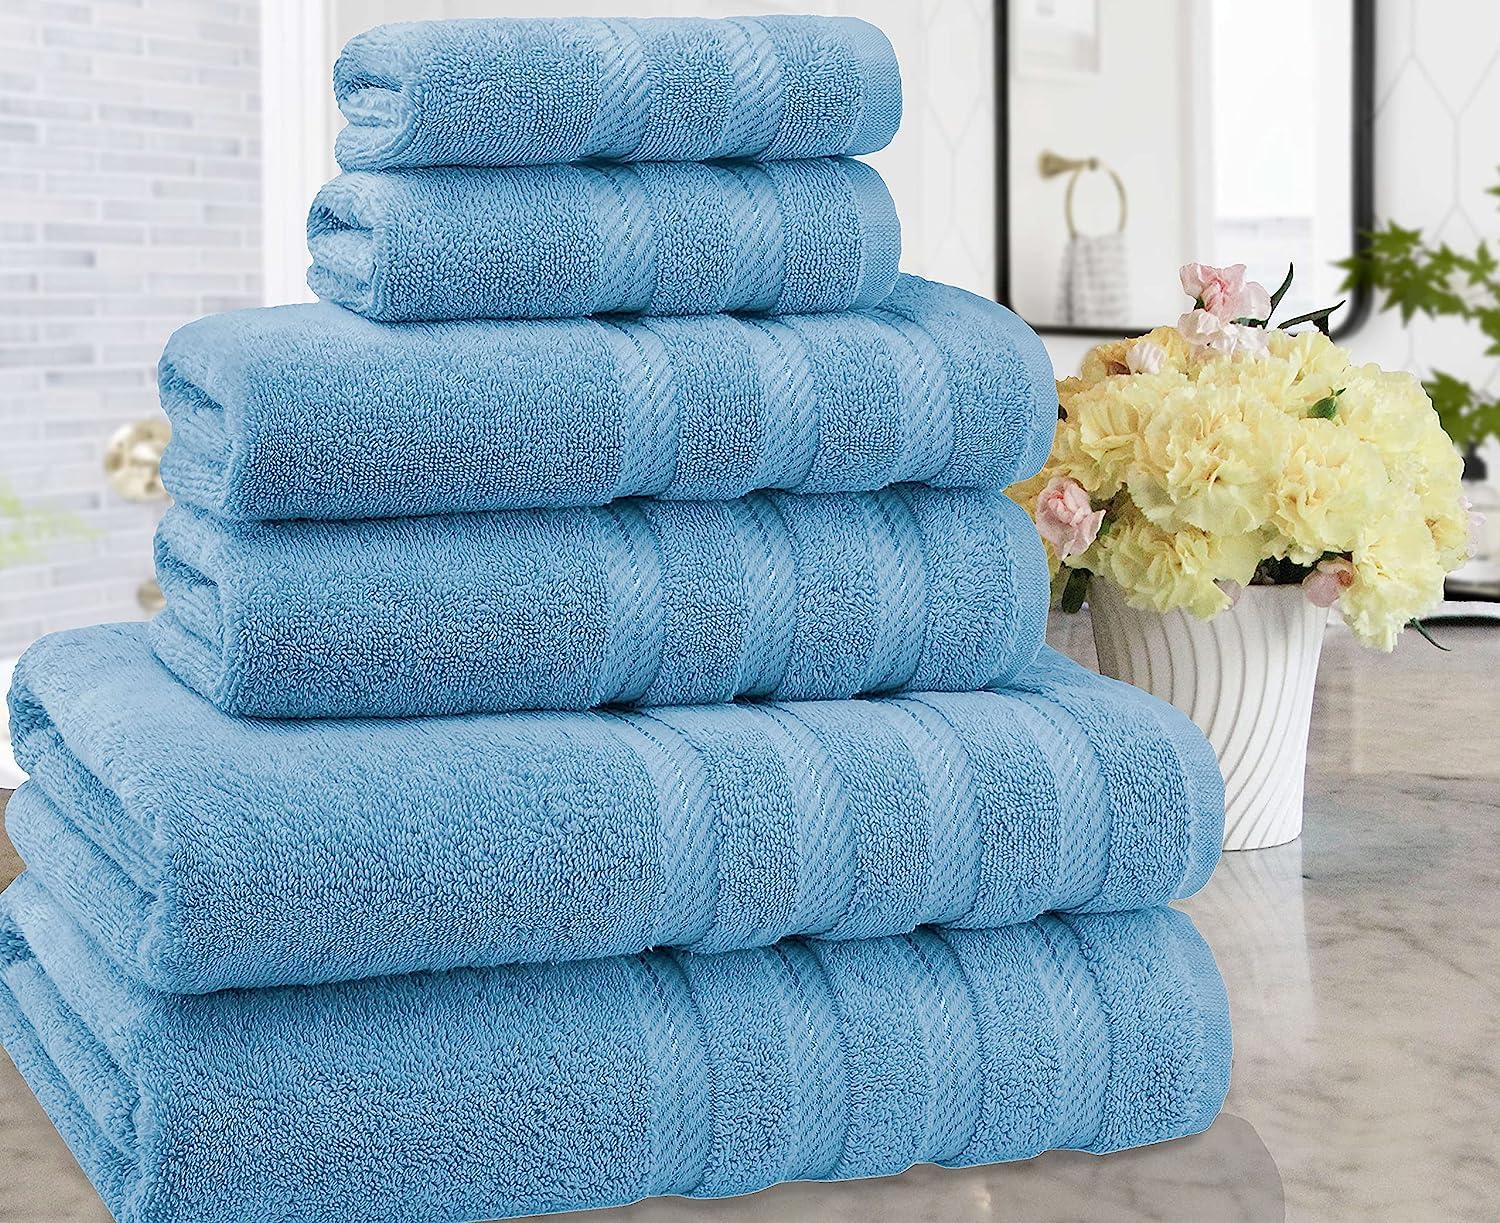 Salem Linen 6 Piece 100% Cotton Bath Towel Set